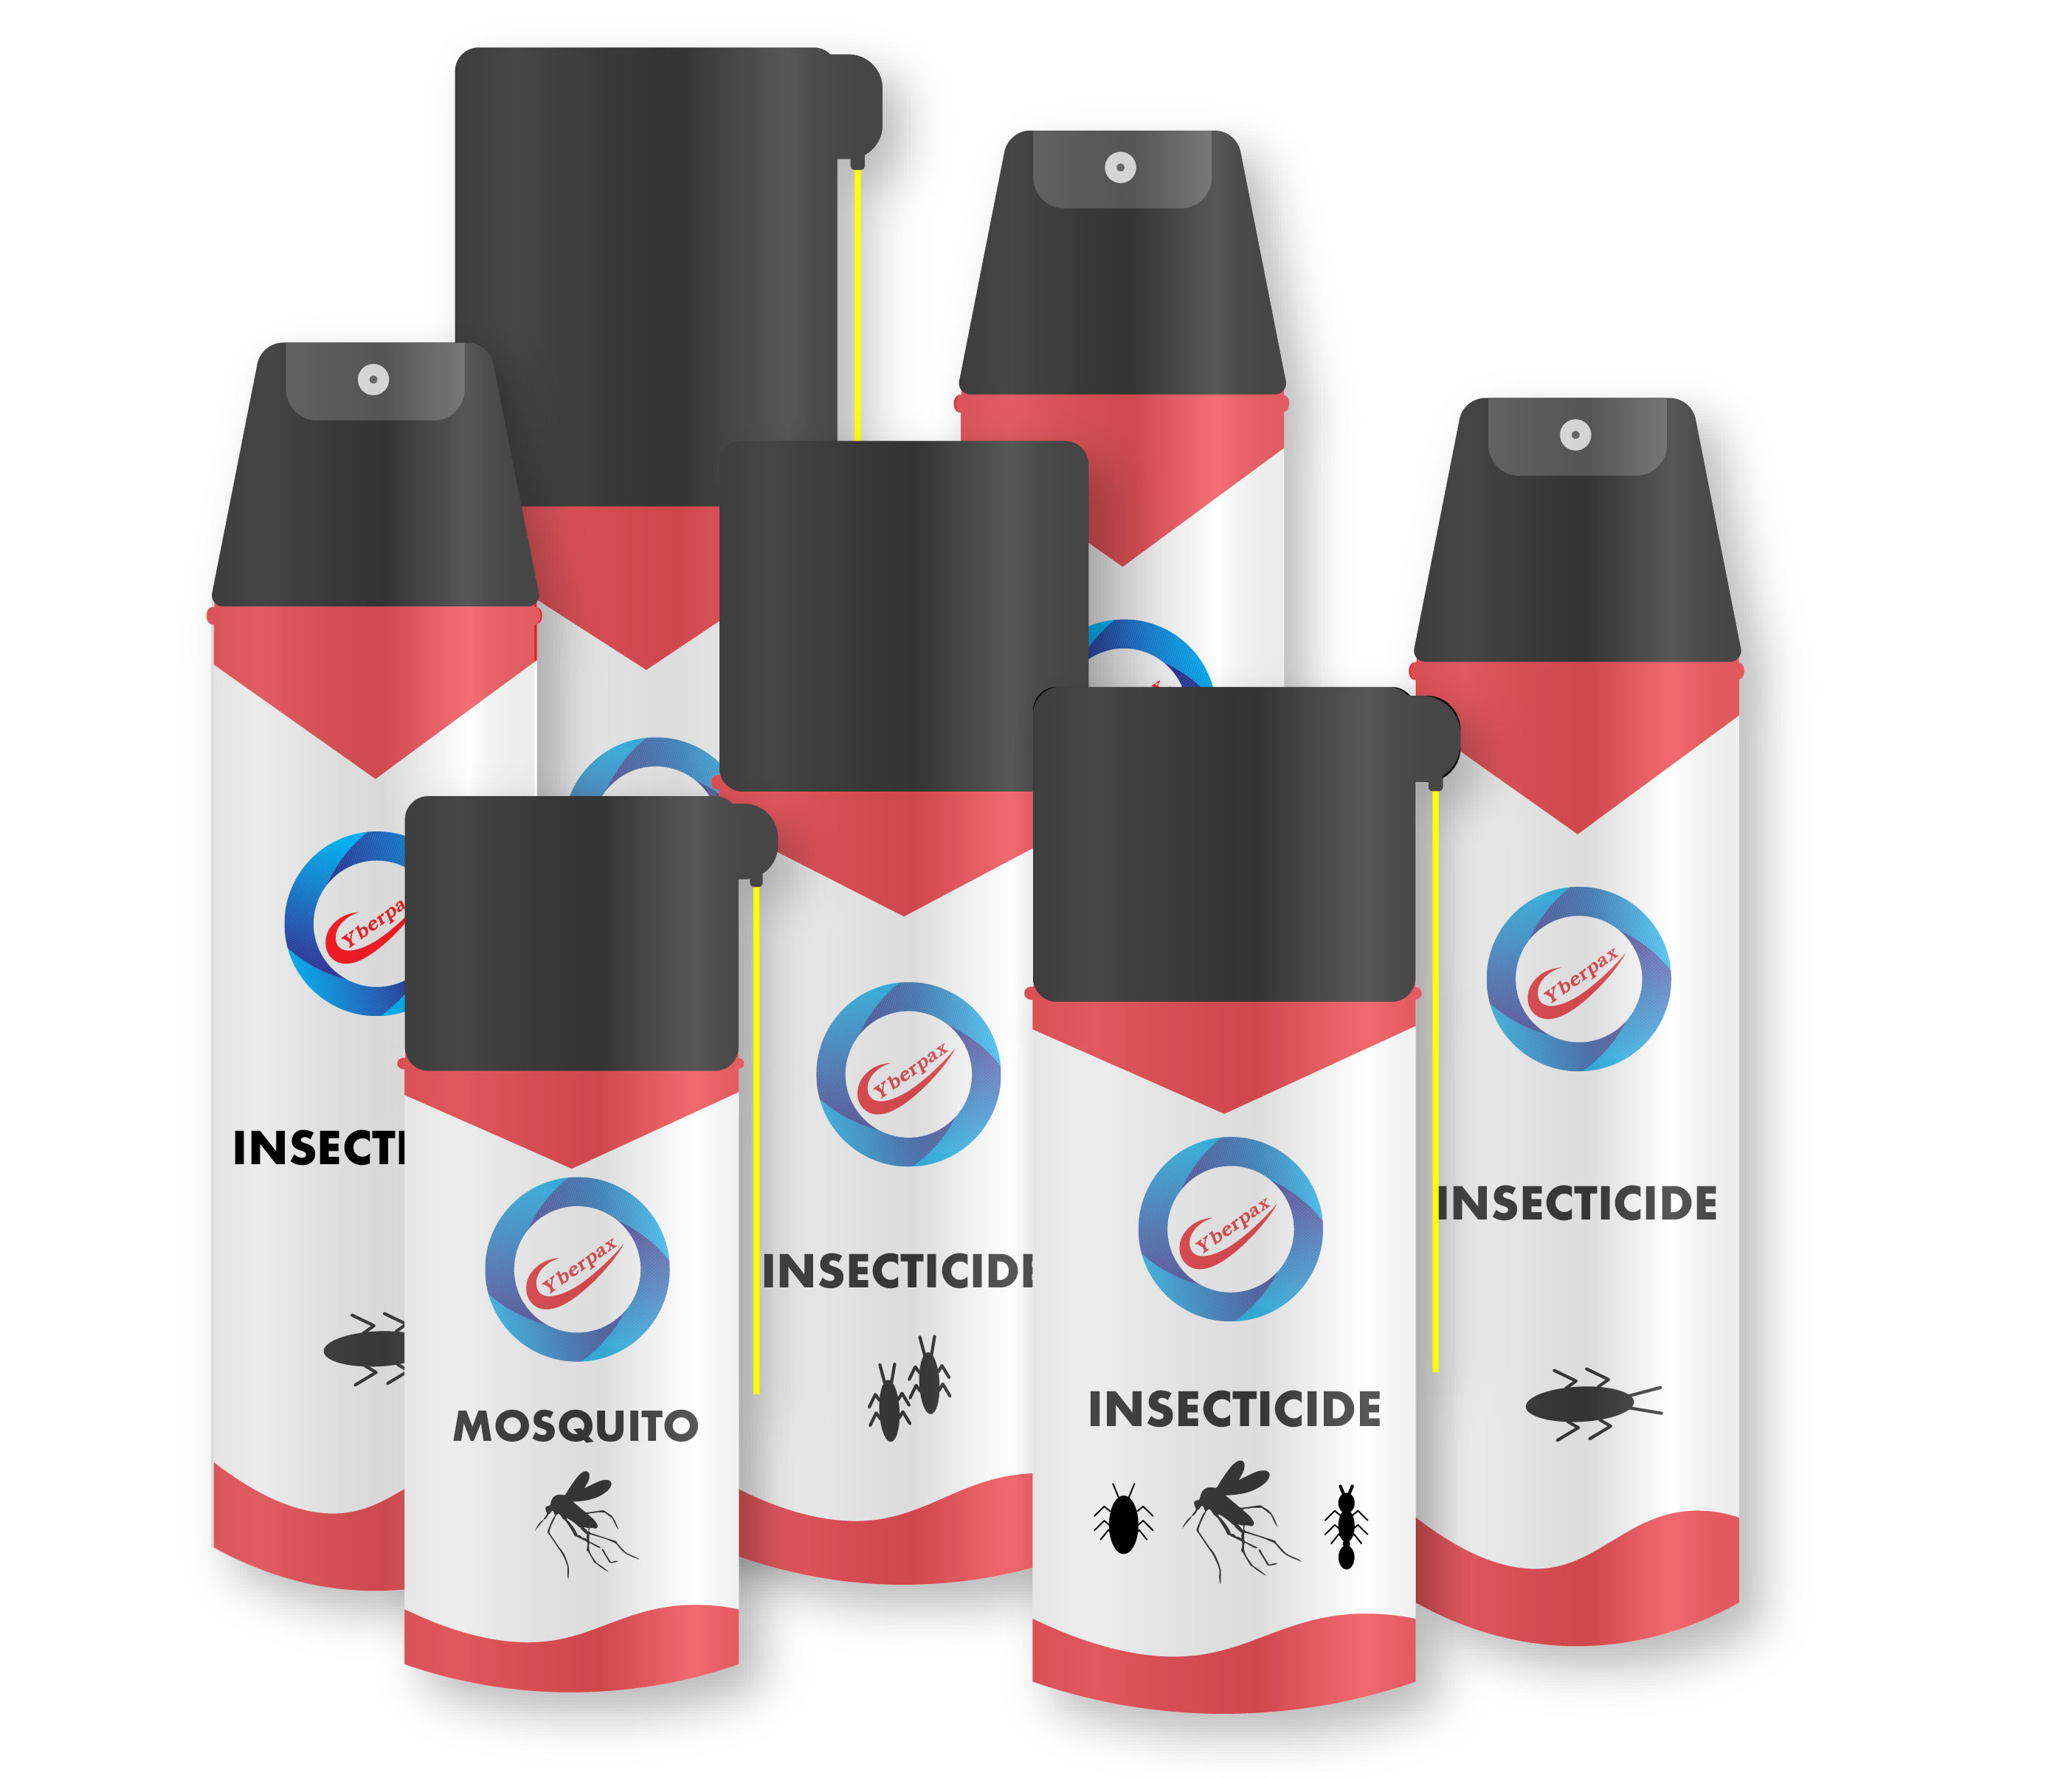 insecticide CyberPax บริษัท ไซเบอร์แพค จำกัด ไซเบอร์แพค ไซเบอร์ ผลิตสเปรย์ โรงงานบรรจุกระป๋องสเปรย์ โรงงาน กระป๋องสเปรย์ Air Spray รับบรรจุกระป๋องสเปรย์ สเปรย์น้ำแร่ เครื่องสำอาง สเปรย์เซรัม สเปรย์กันแดด วิหาญไซเบอร์แพค